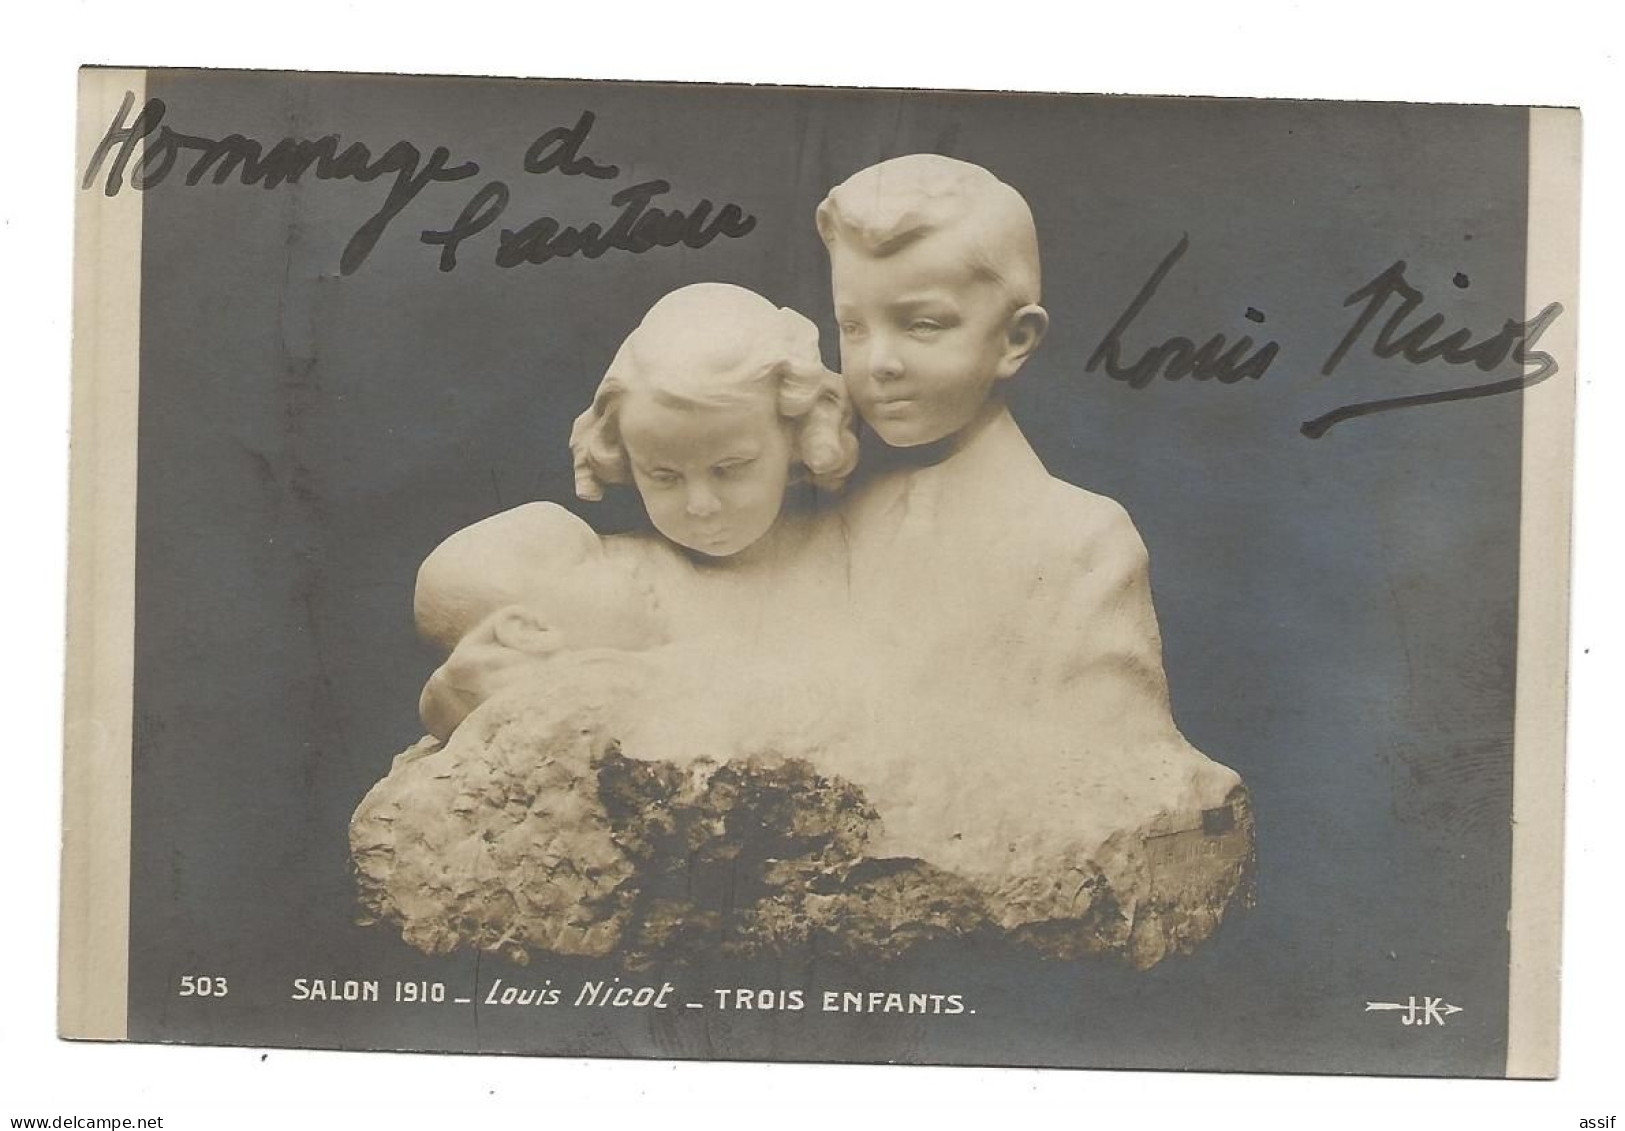 Louis Nicot Salon 1910 Trois Enfants Autographe - Skulpturen